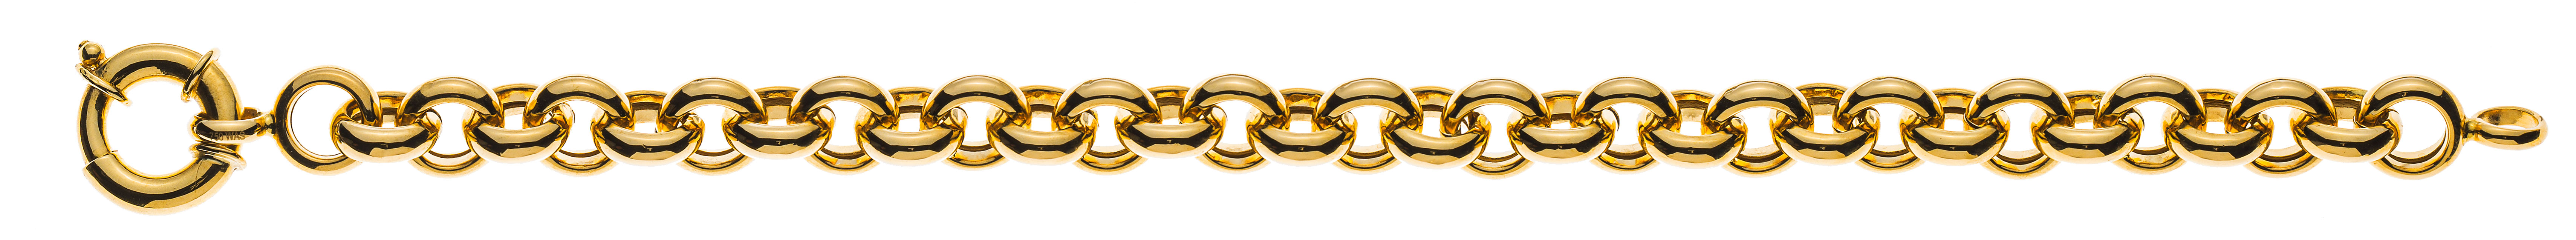 AURONOS Prestige Necklace yellow gold 18K semi-solid pea chain 60cm 9mm